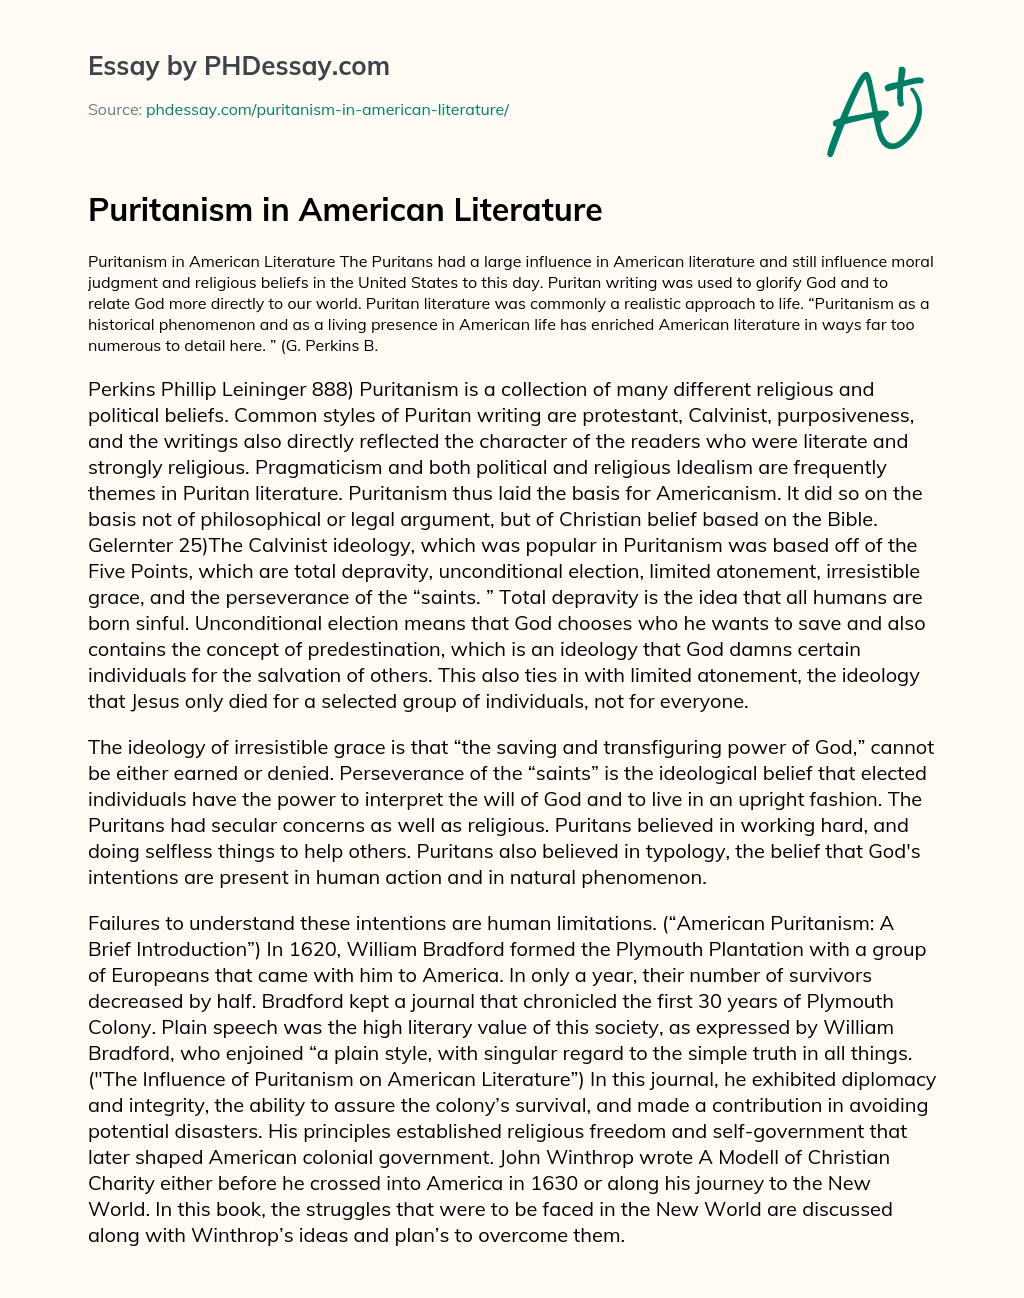 Puritanism in American Literature essay